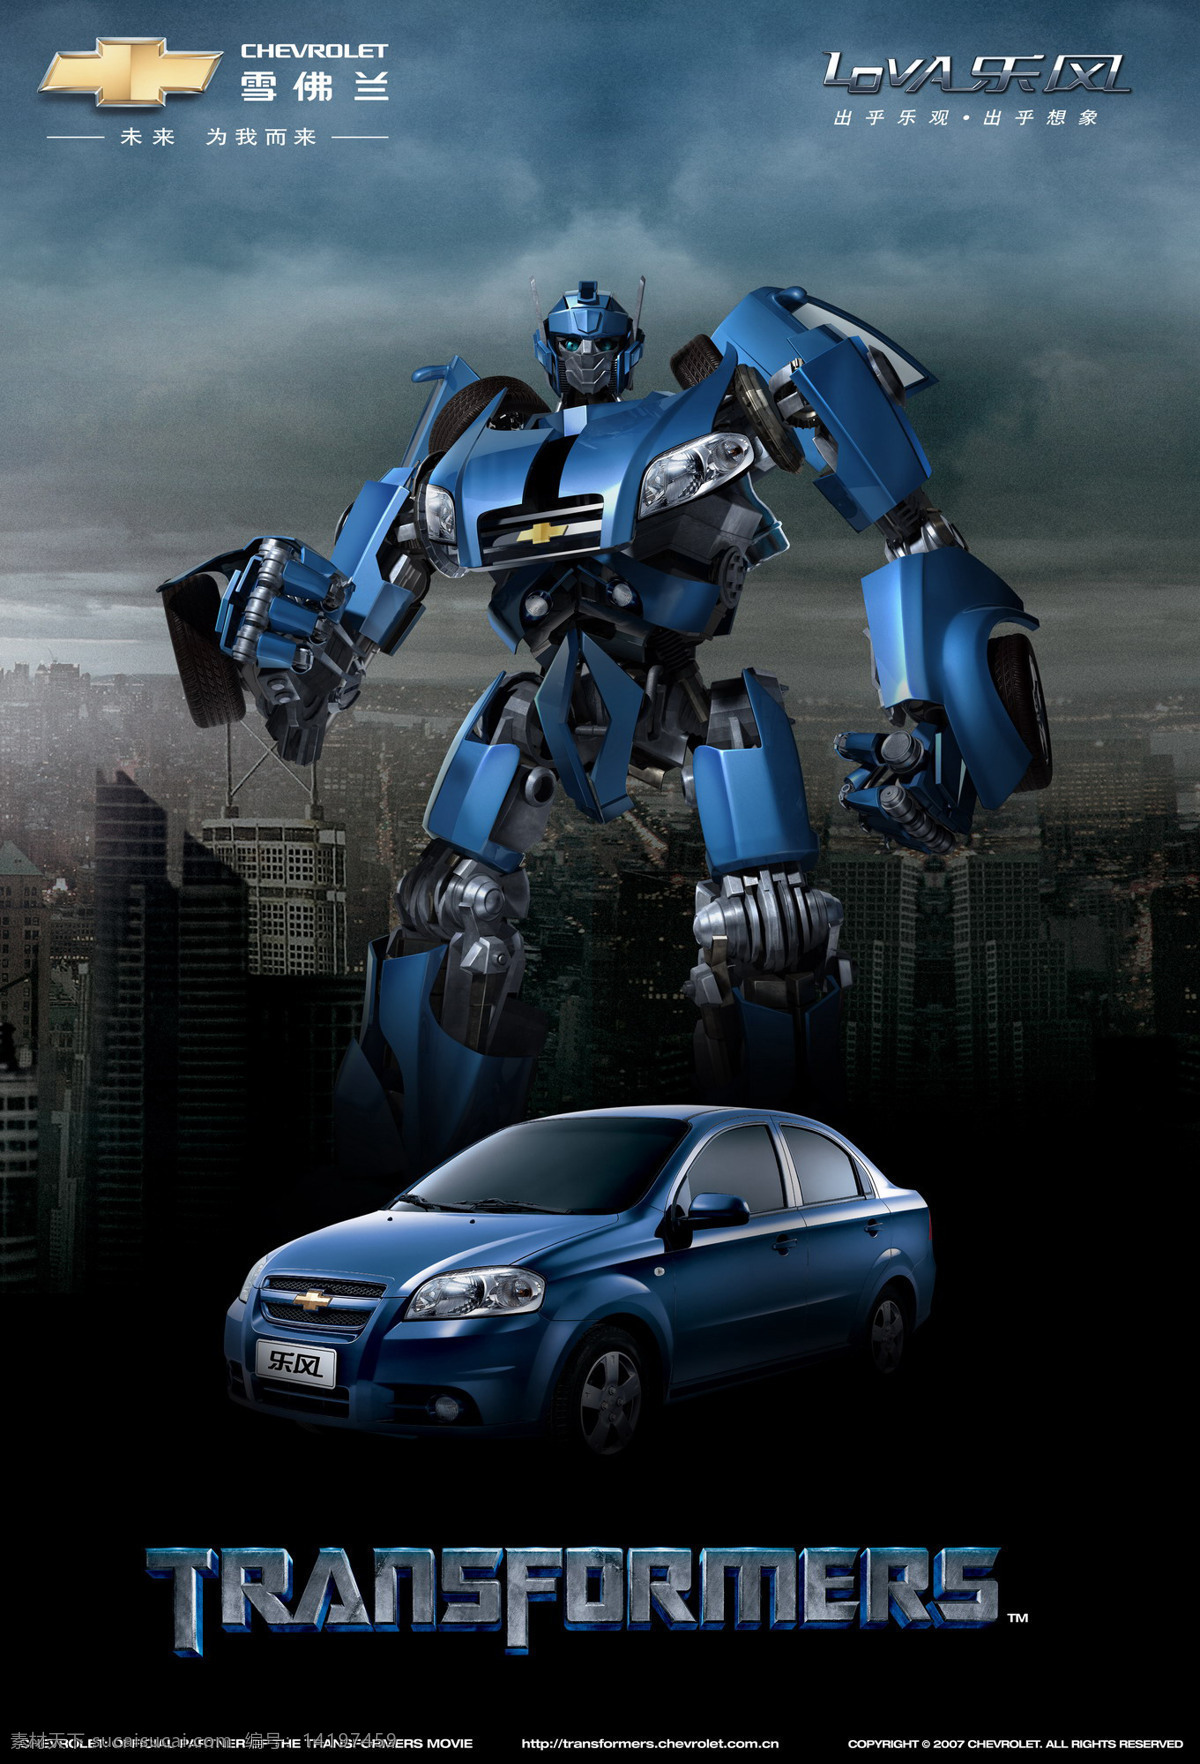 雪佛兰 300 变形金刚 城市 金属 科幻 蓝色 汽车 设计图库 海报 现代 影视 其他海报设计